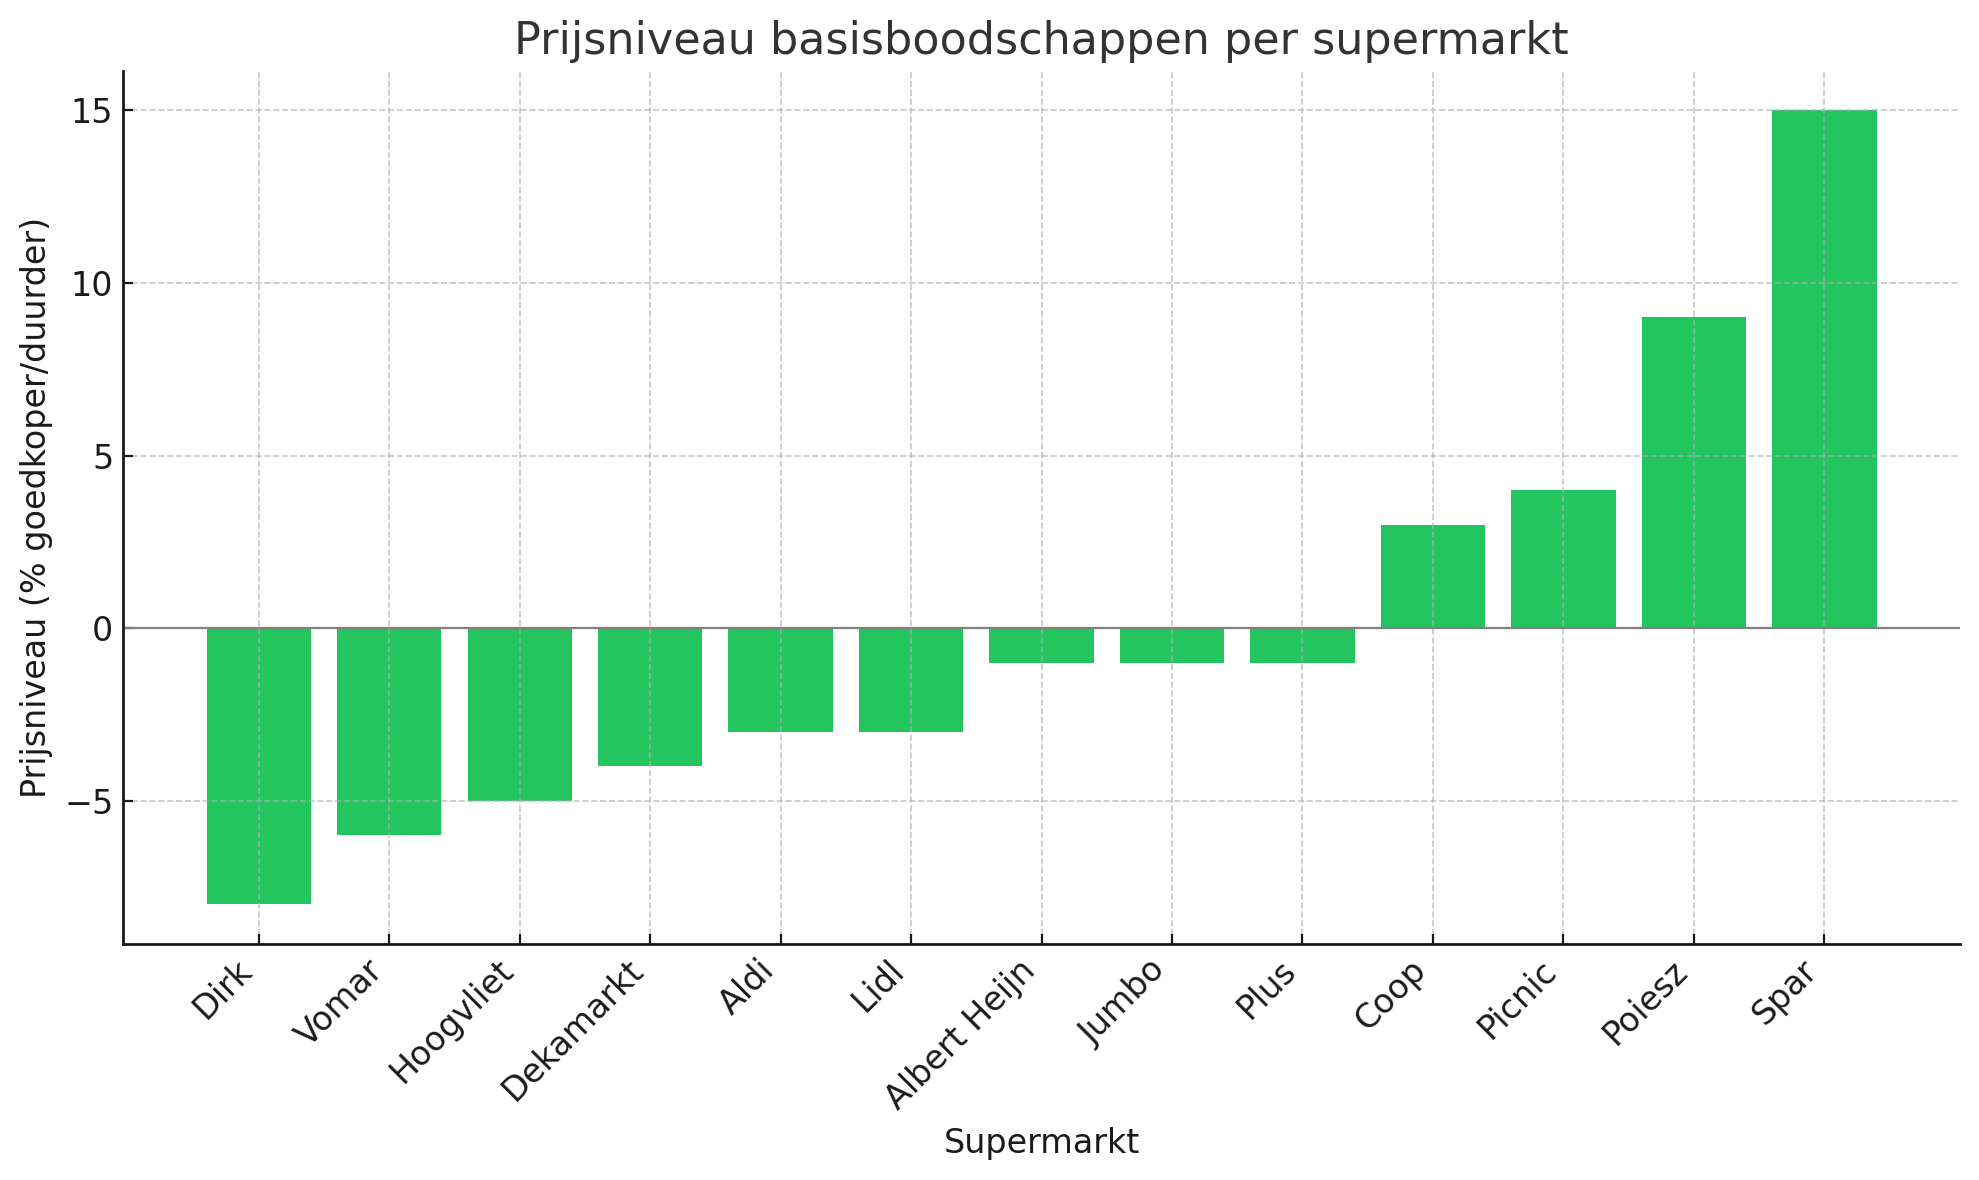 Prijsniveau basisboodschappen per supermarkt